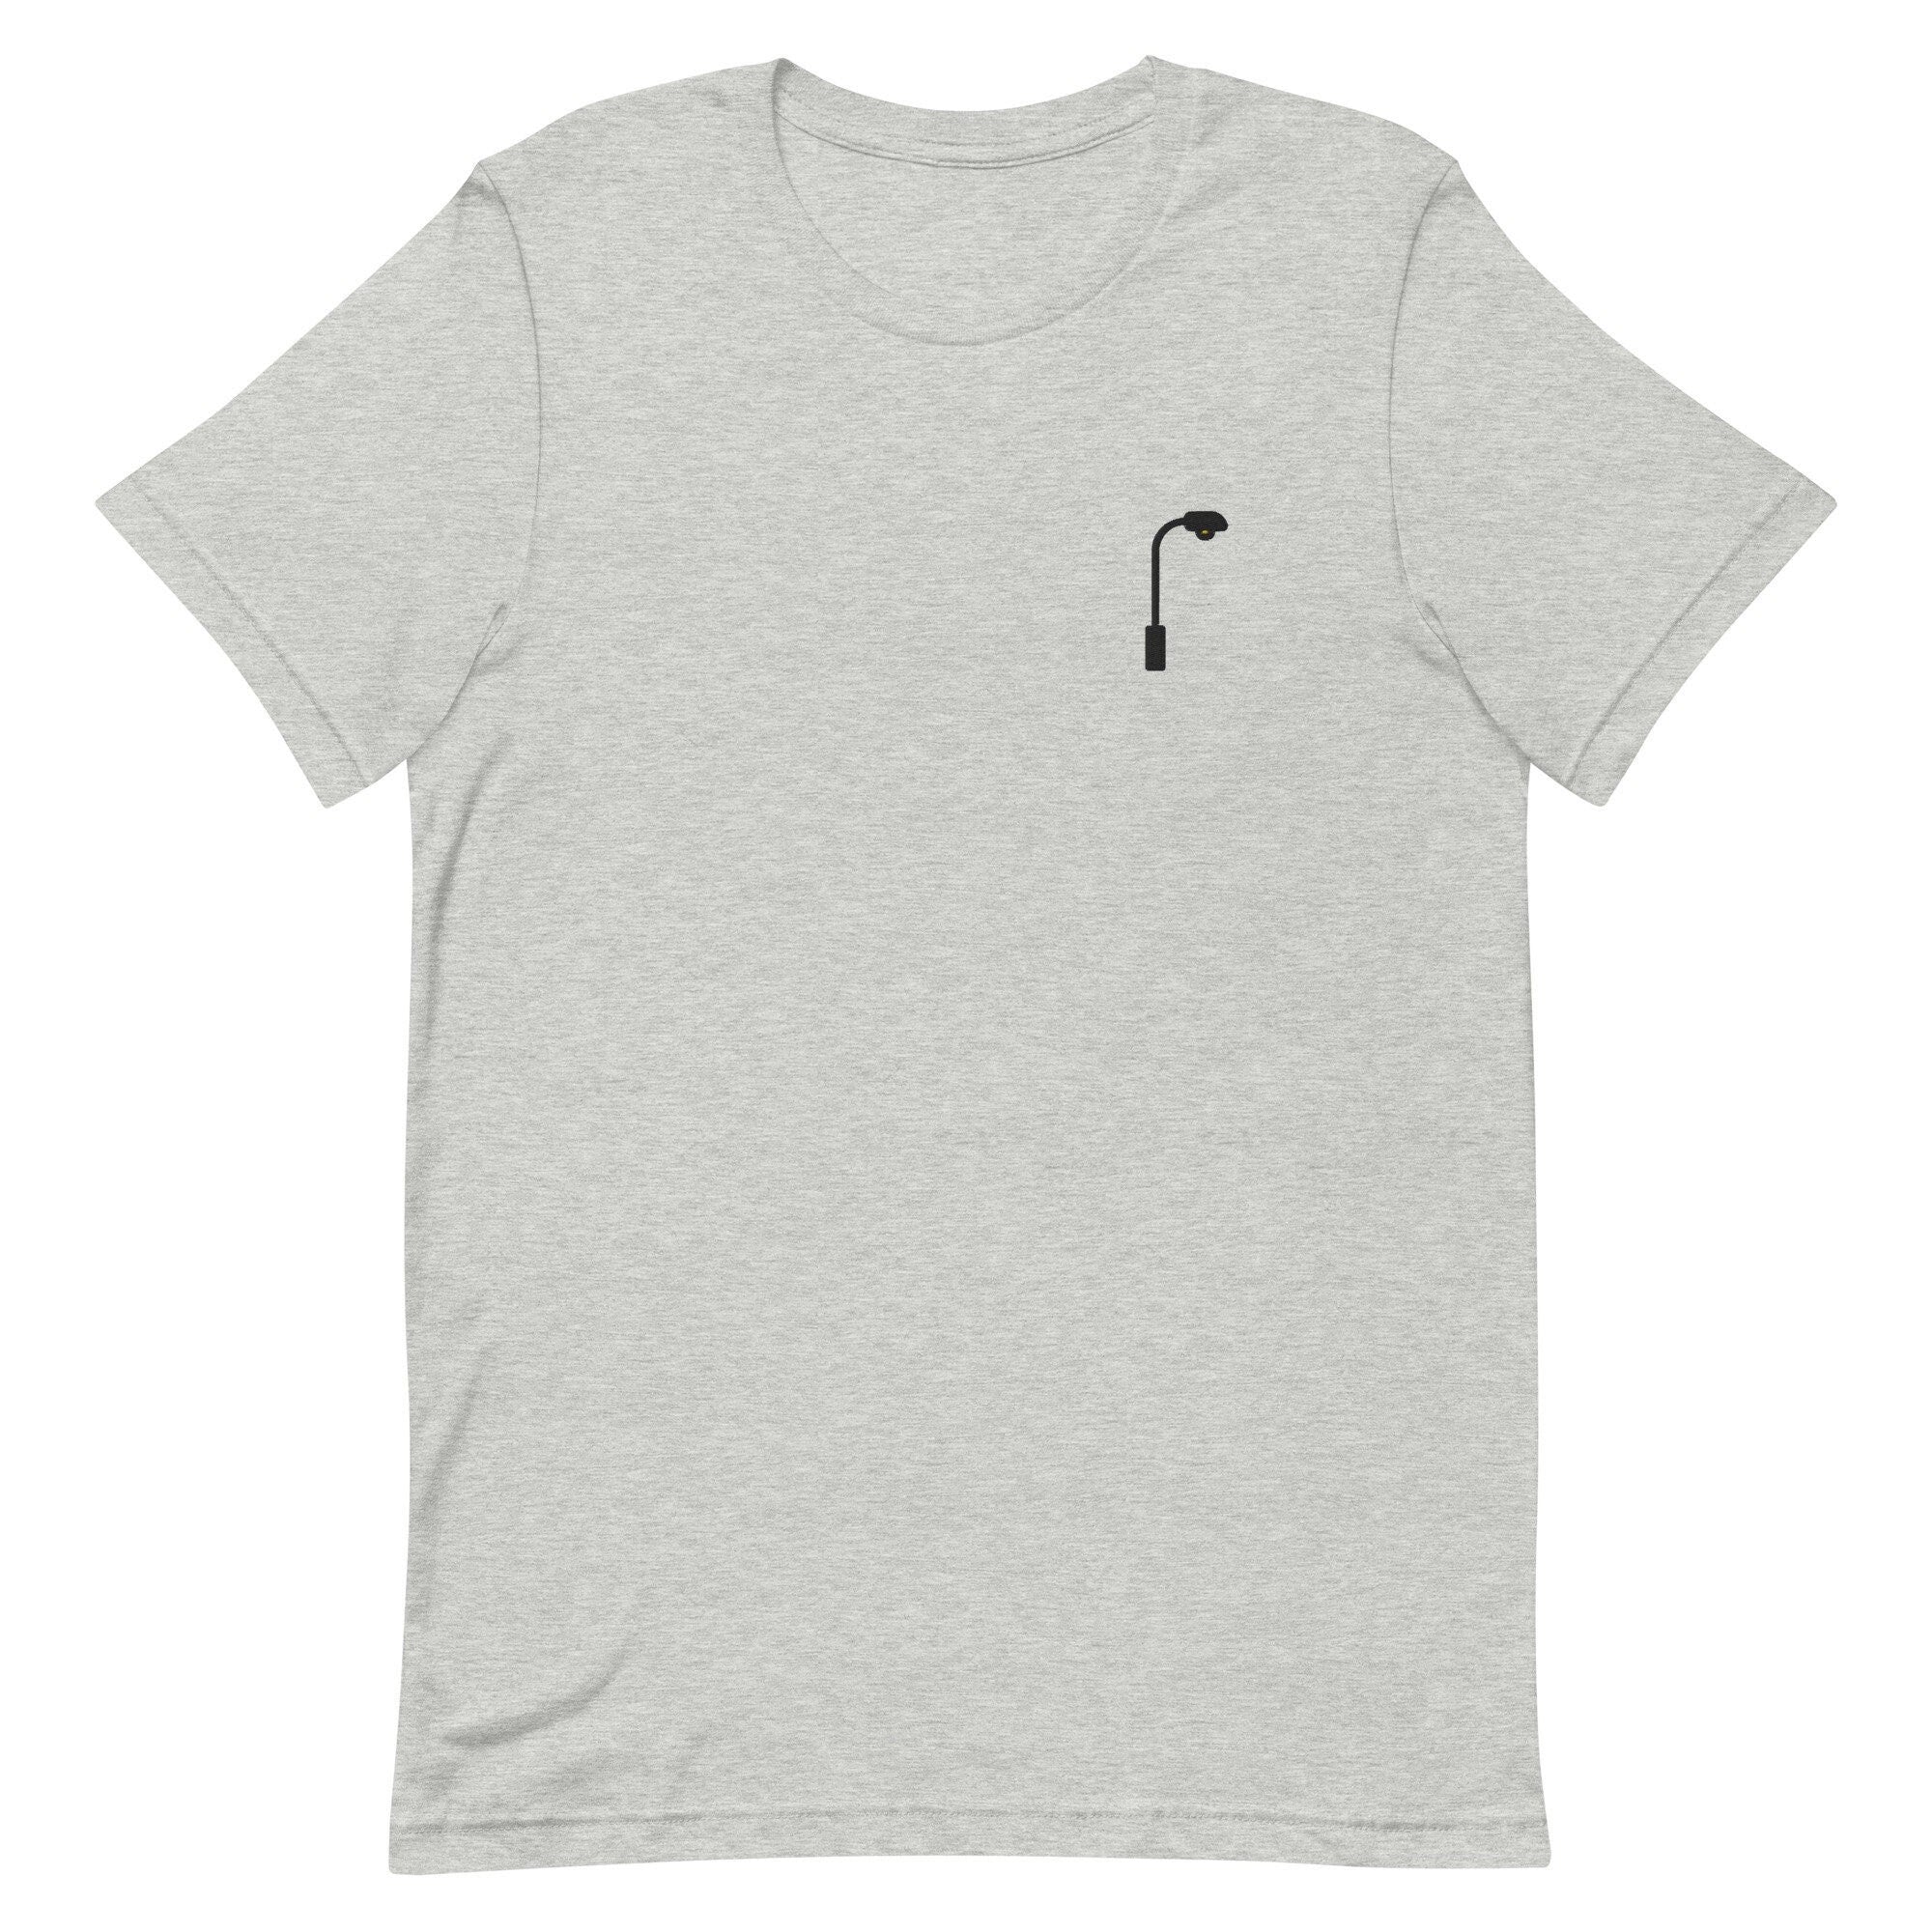 Streetlamp Premium Men's T-Shirt, Embroidered Men's T-Shirt Gift for Boyfriend, Men's Short Sleeve Shirt - Multiple Colors